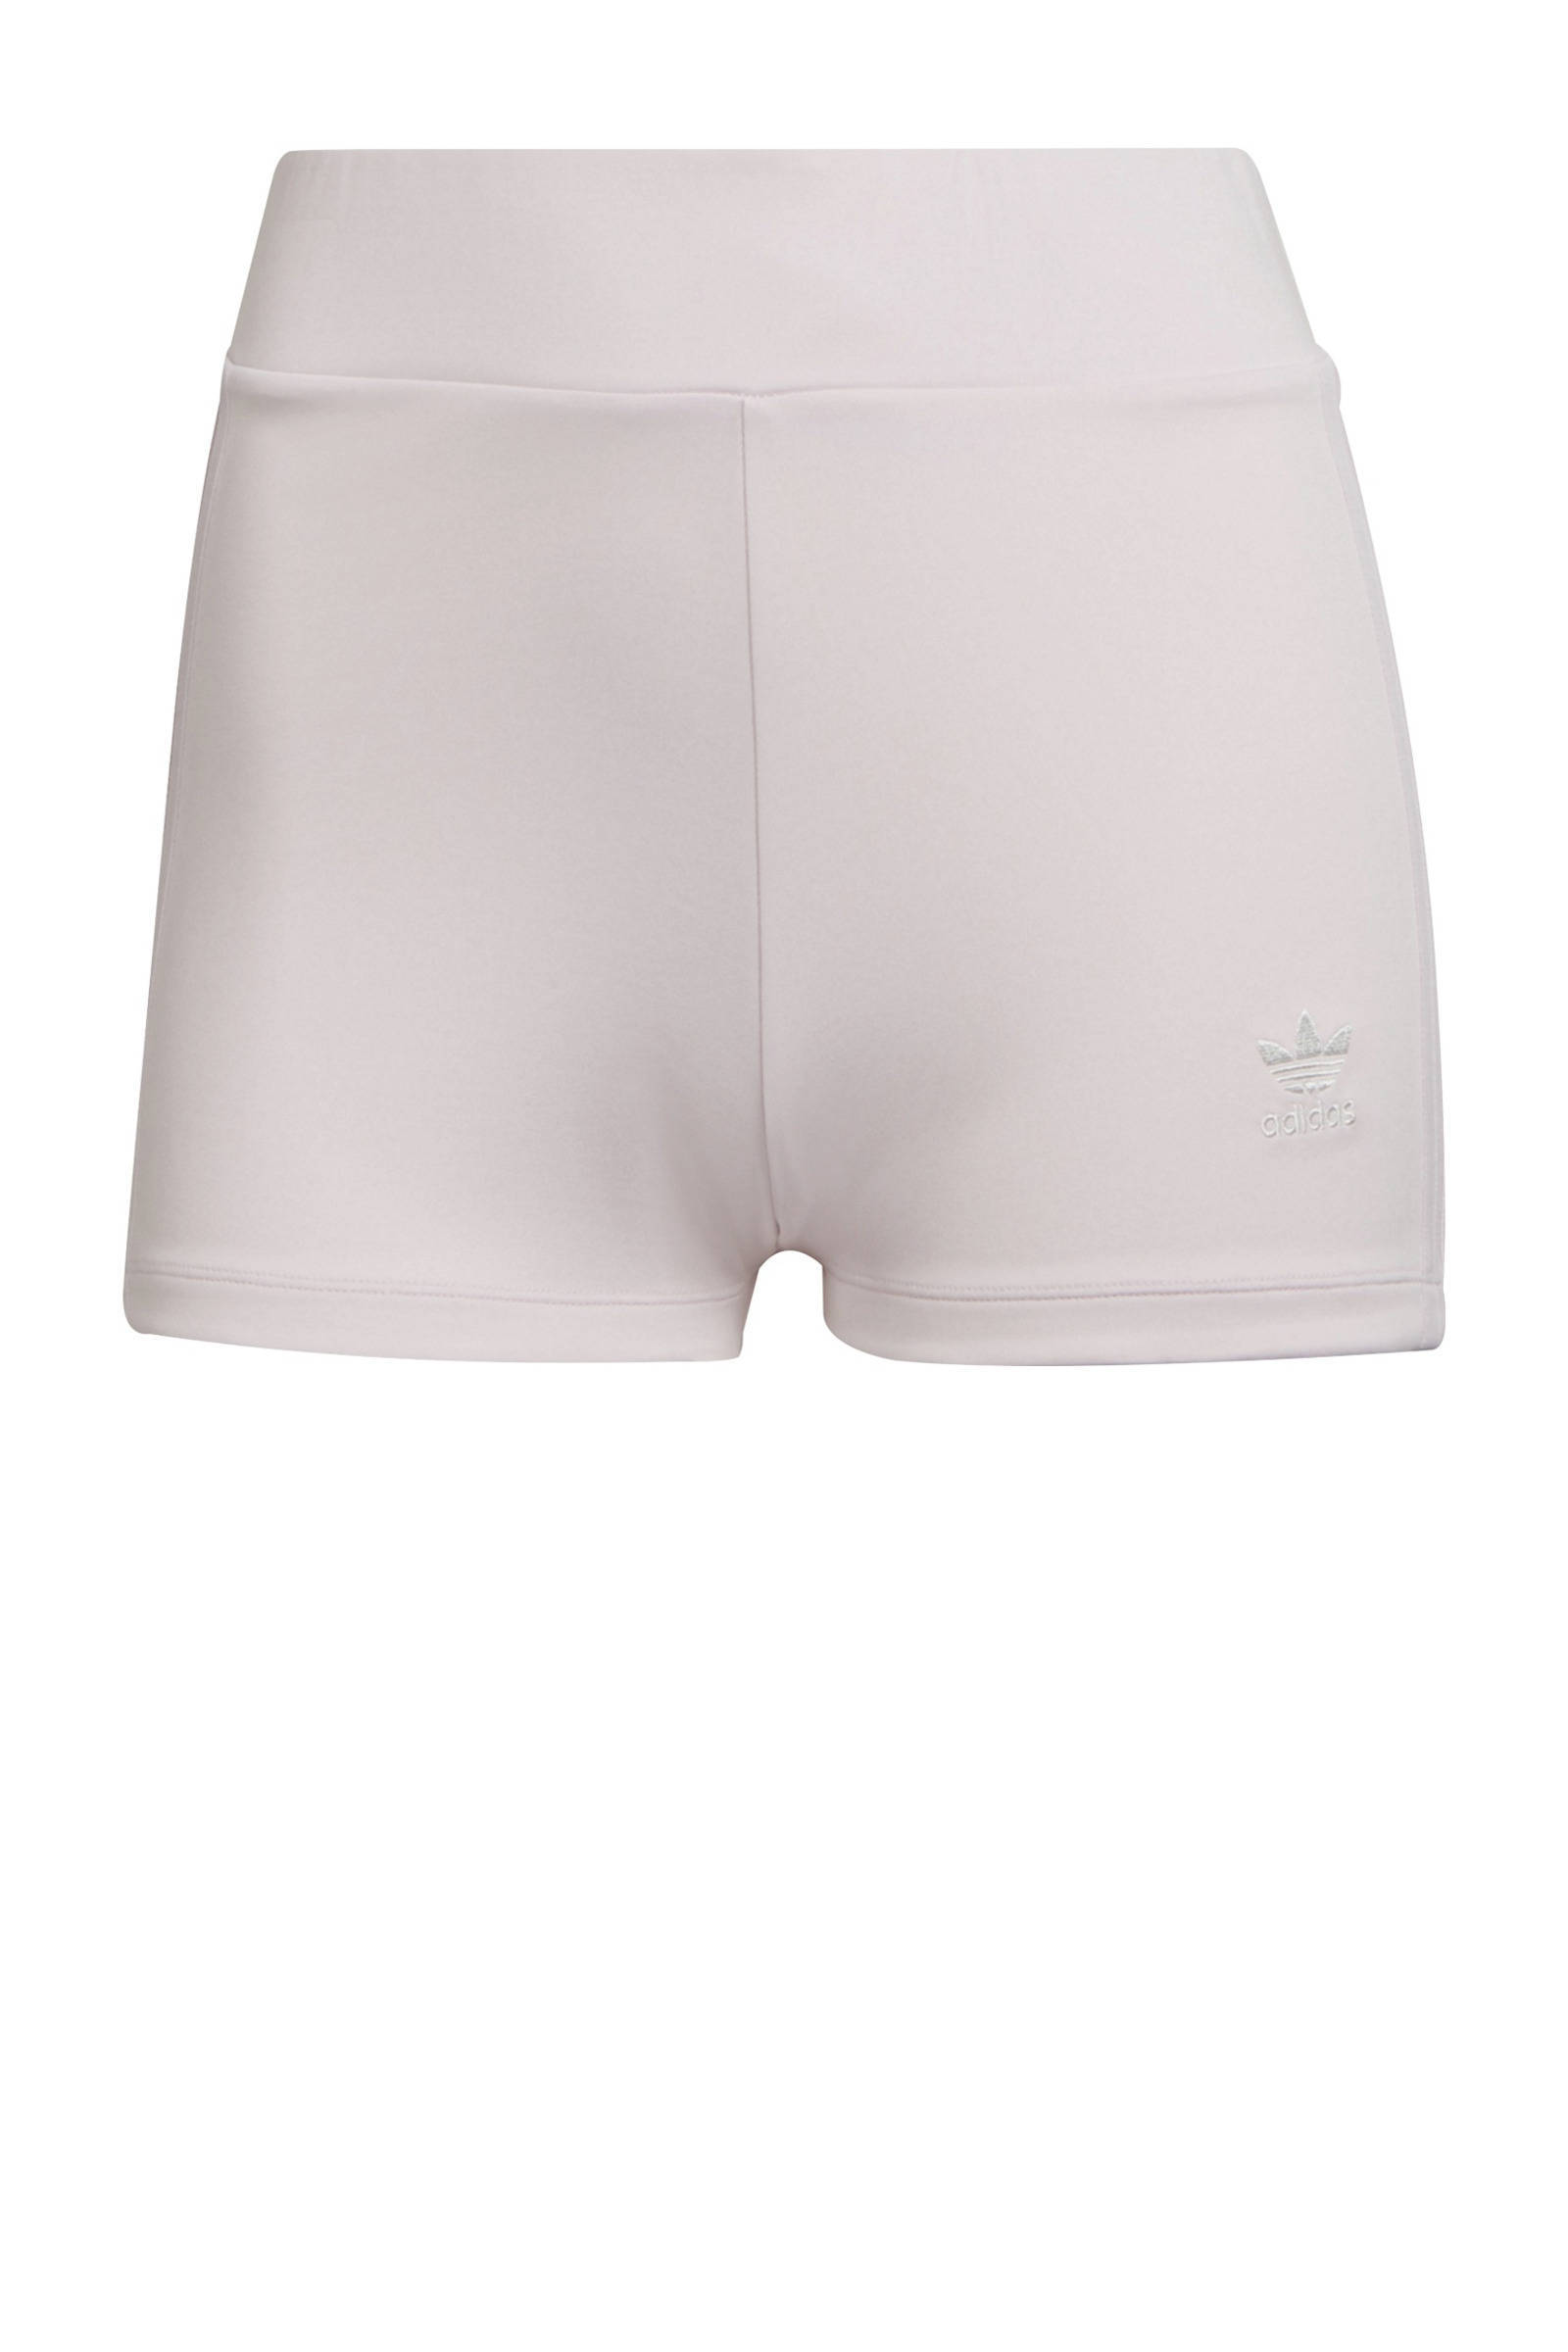 Adidas Originals 'Tennis Luxe' Booty shorts met logo en 3 Stripes in parelmoer roze online kopen